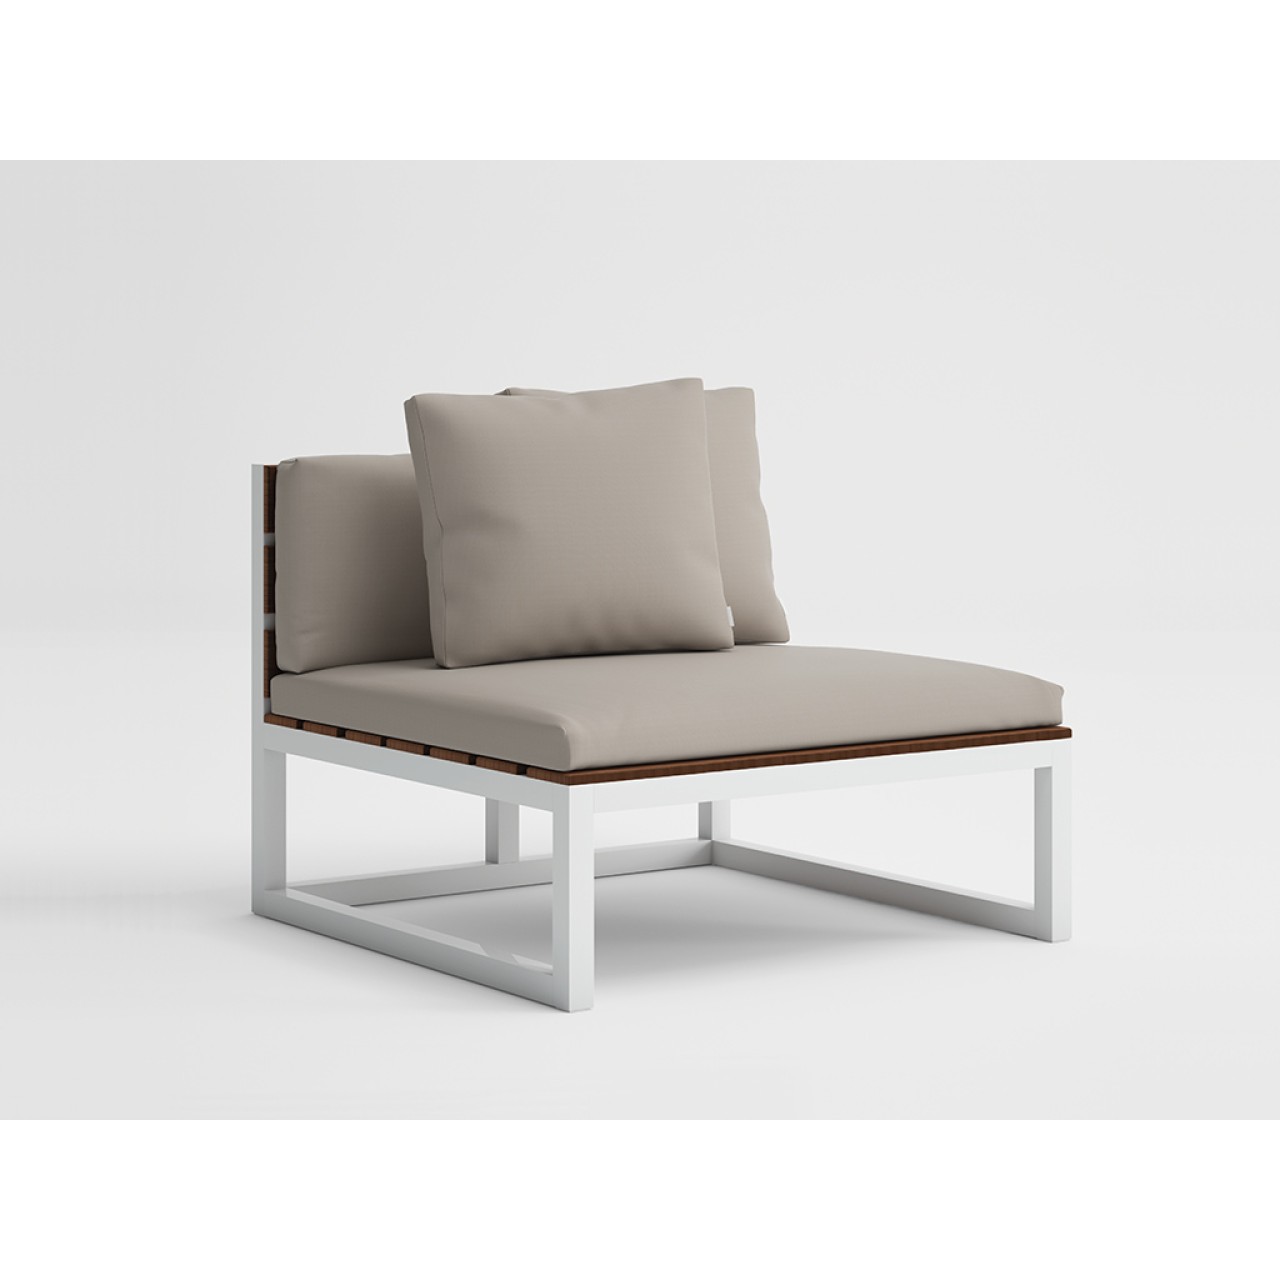 Saler Soft Teak - Modular Sofa 3 Protective Cover